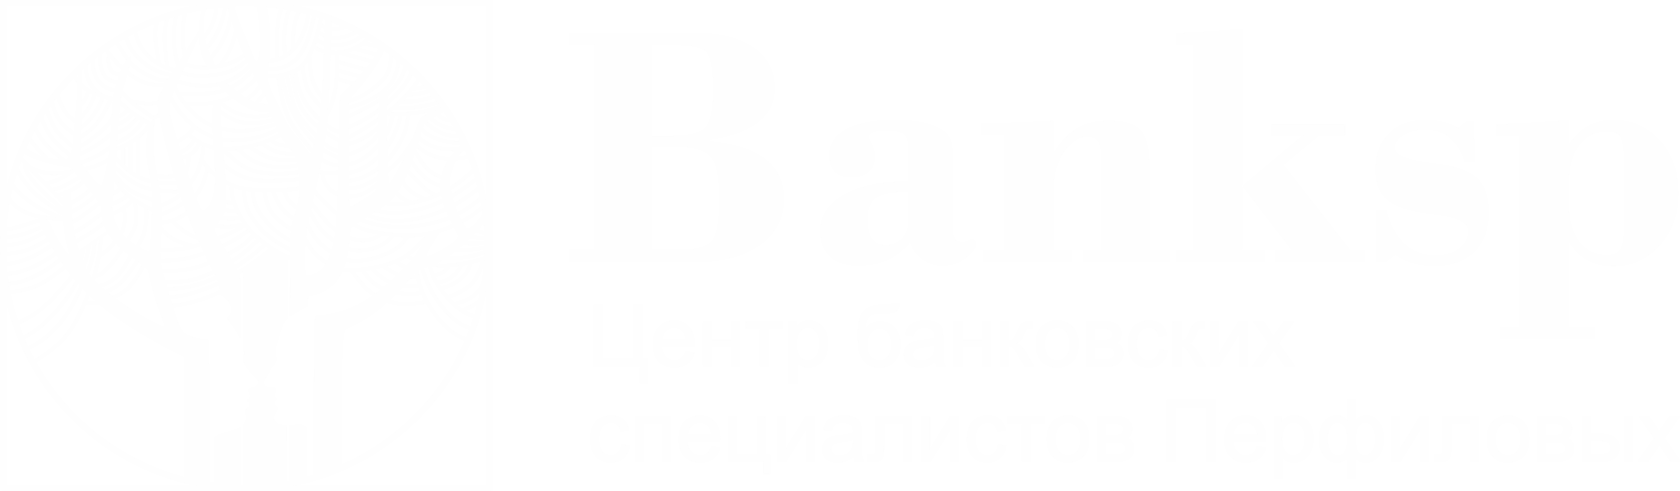 Центр банковских специалистов Перфиловых